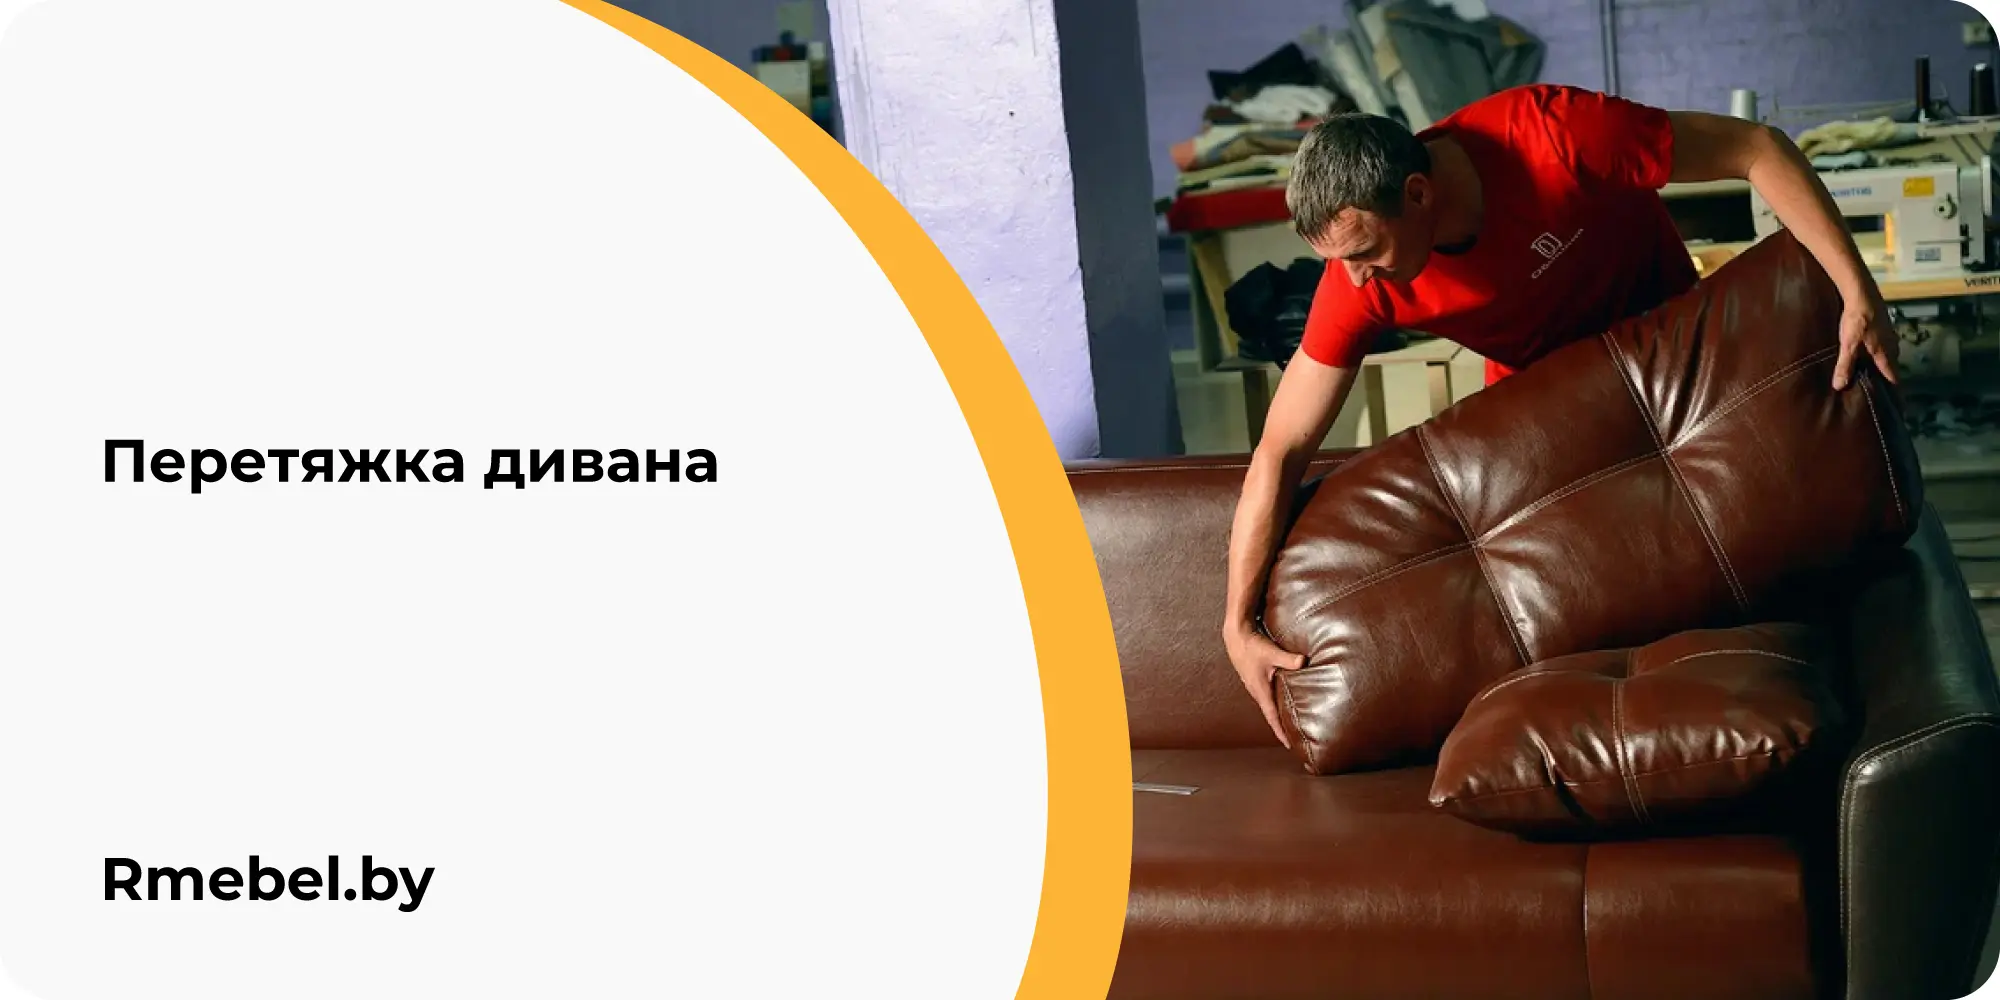 Перетяжка дивана в Минске кухонного, цена недорого